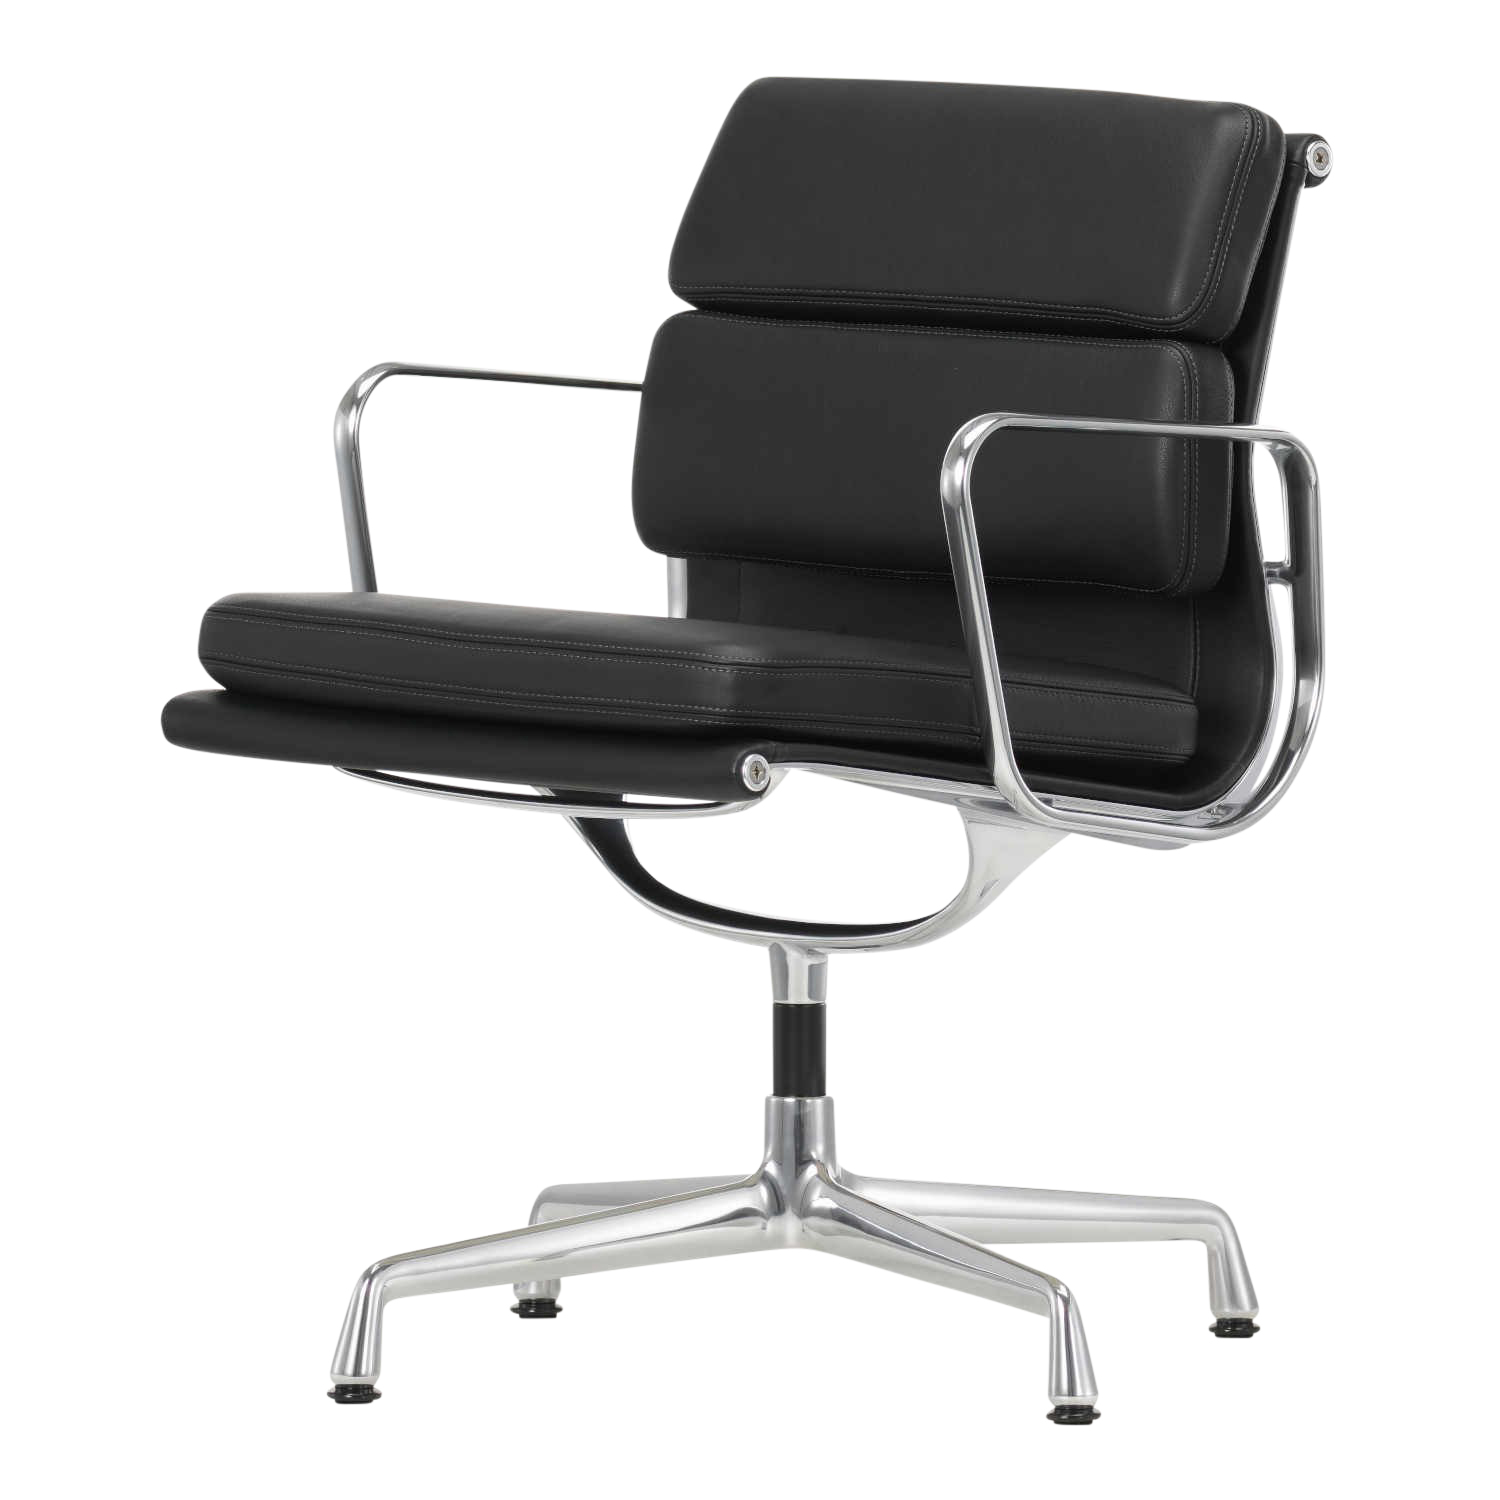 EA208 Soft Pad Chair Drehstuhl, Leder/Rückseite Plano 72/88 snow / weiss, Höhe 81 cm, Untergestell glanzchrom, Gleiter filzgleiter für harte böden von Vitra